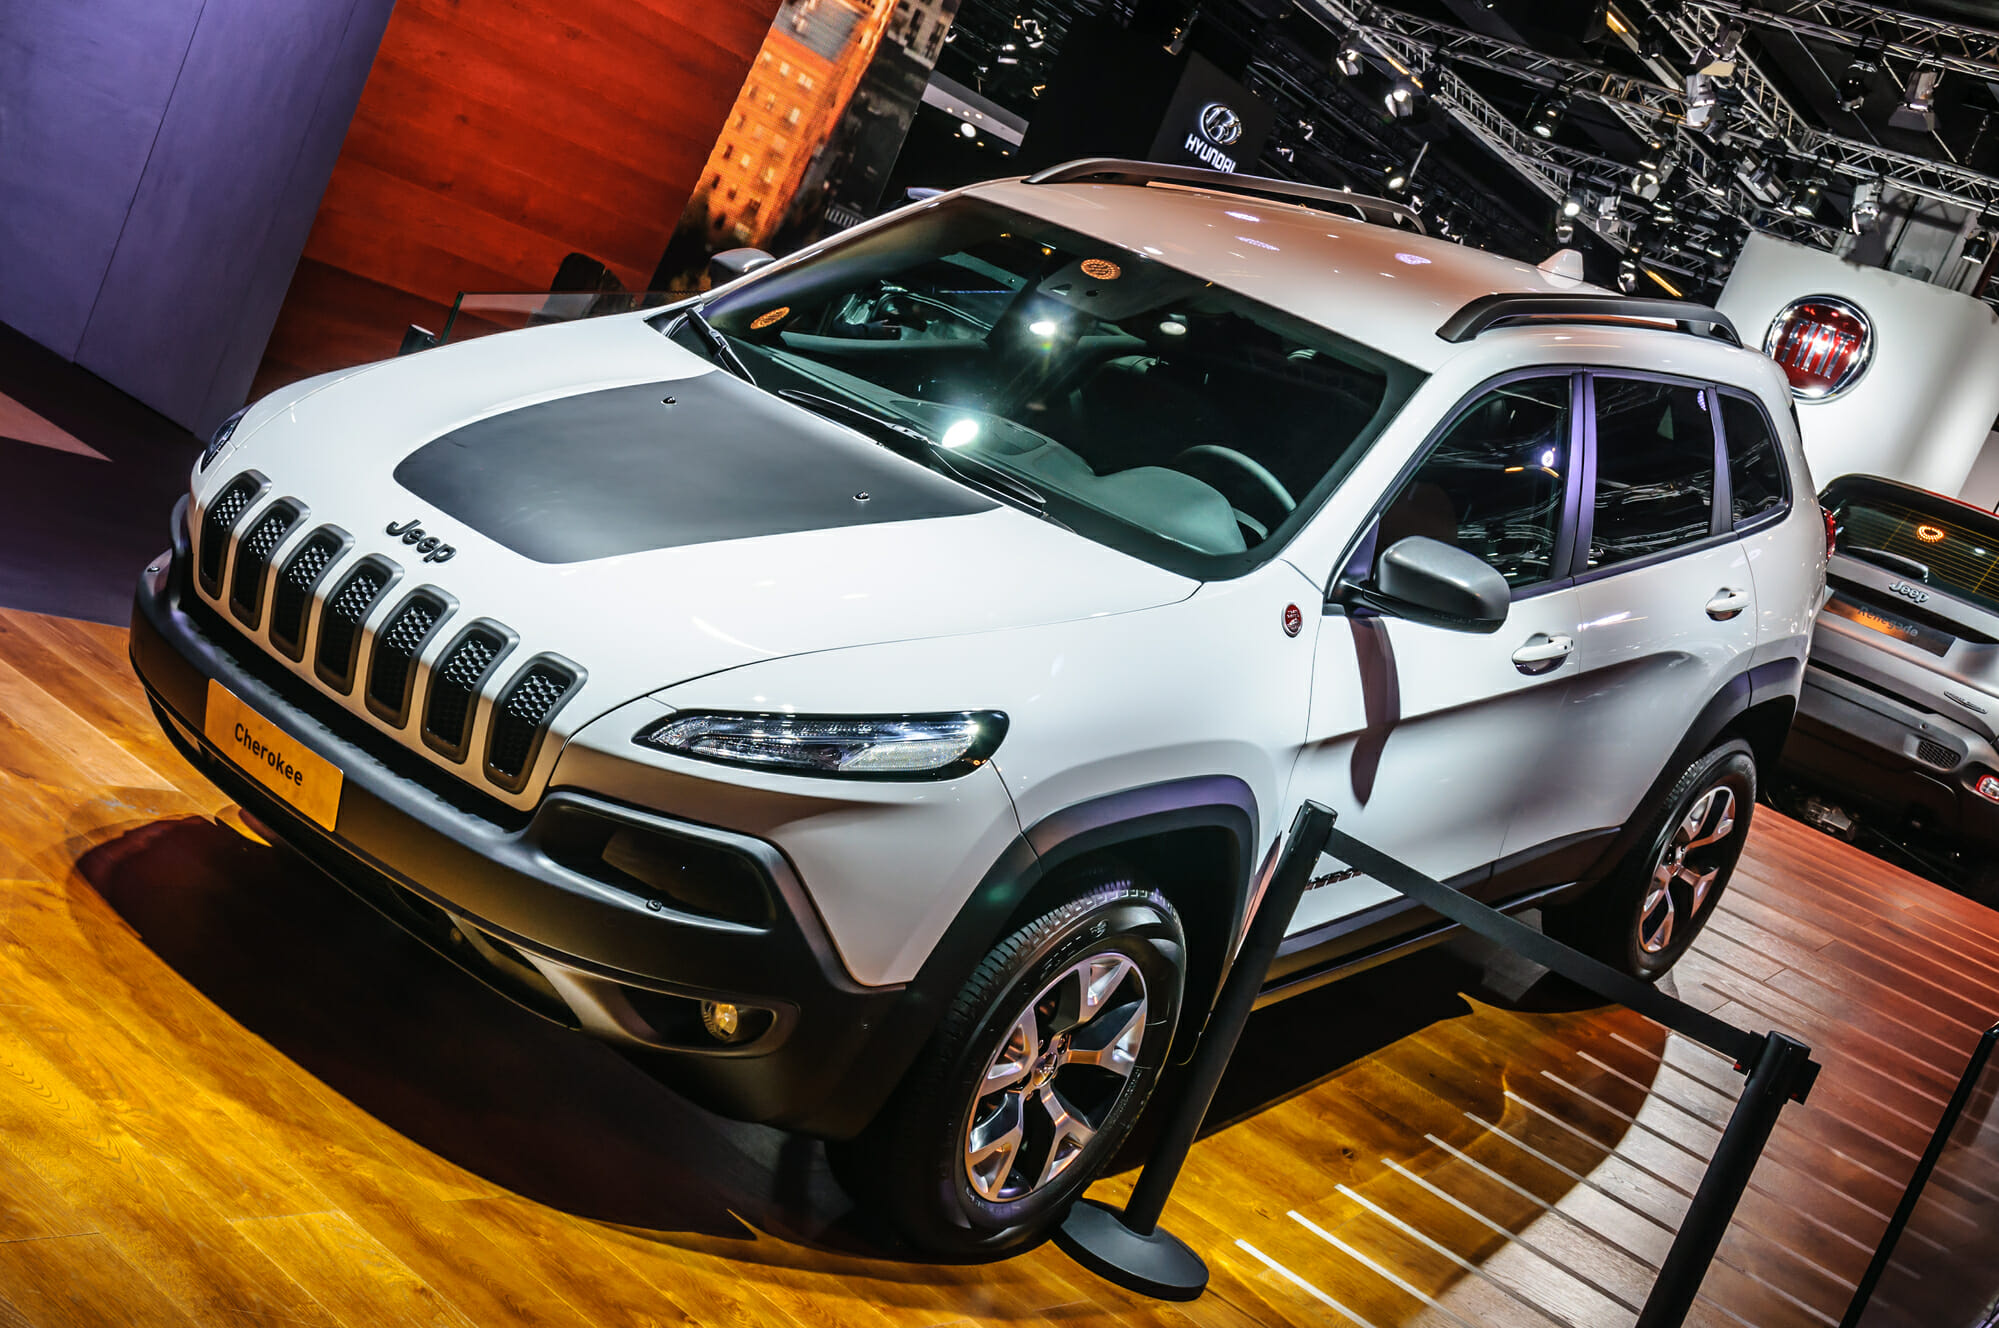 Jeep Cherokee at car show - Vehicle History